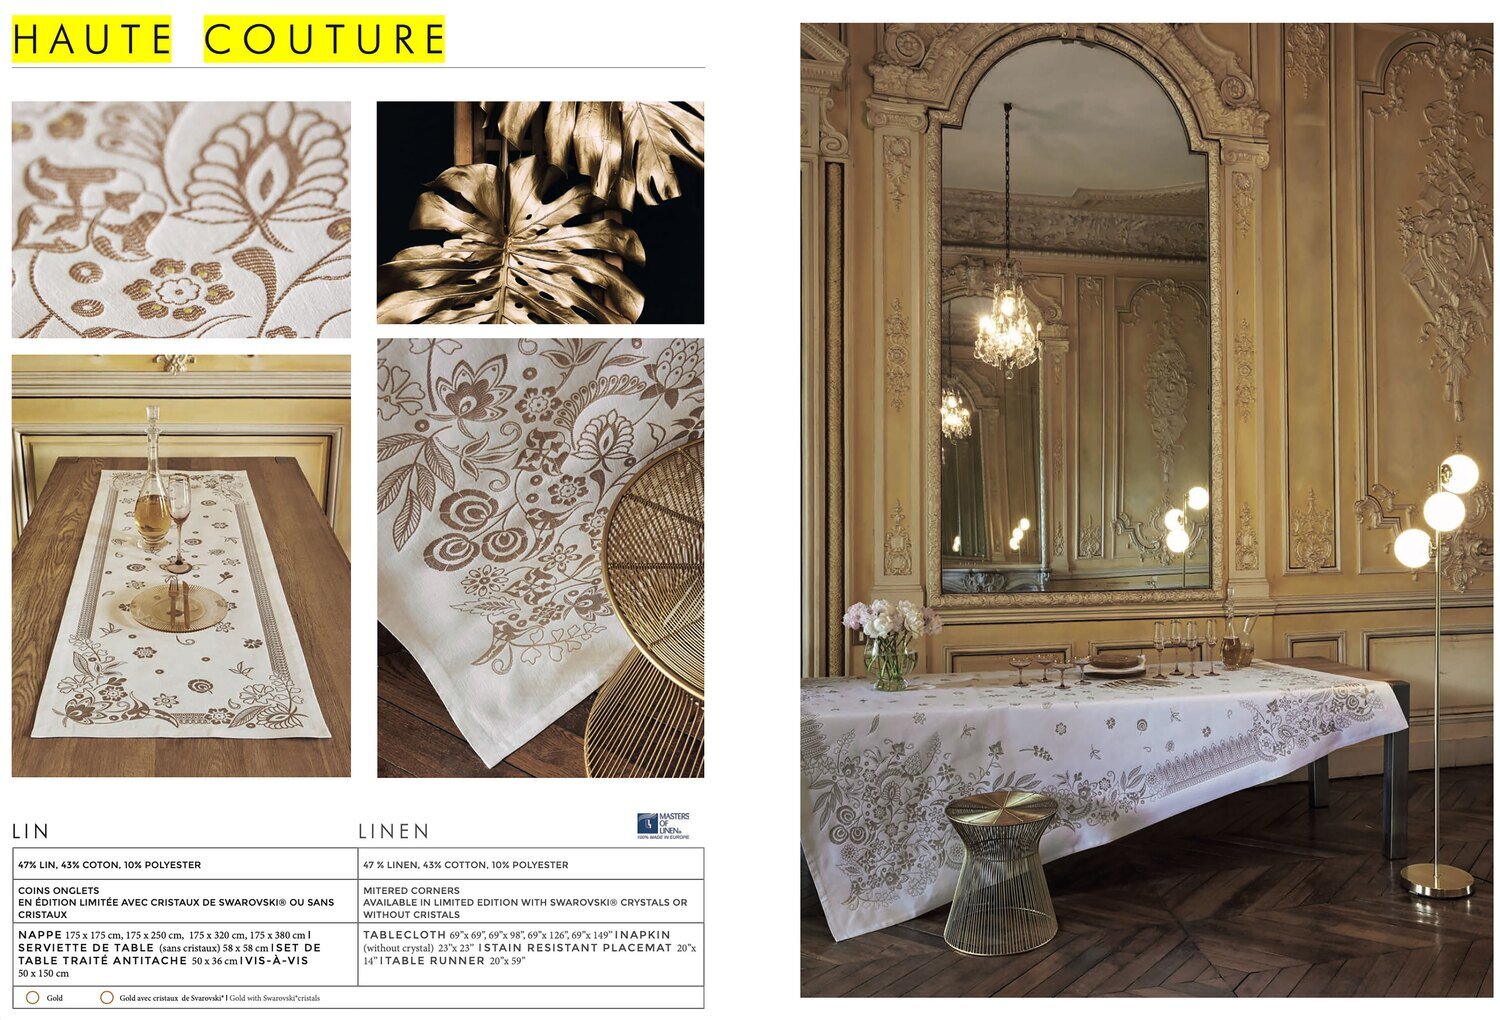 Le Jacquard Francais Haute Couture Gold Tablecloth 69 x 149 Inch 25760